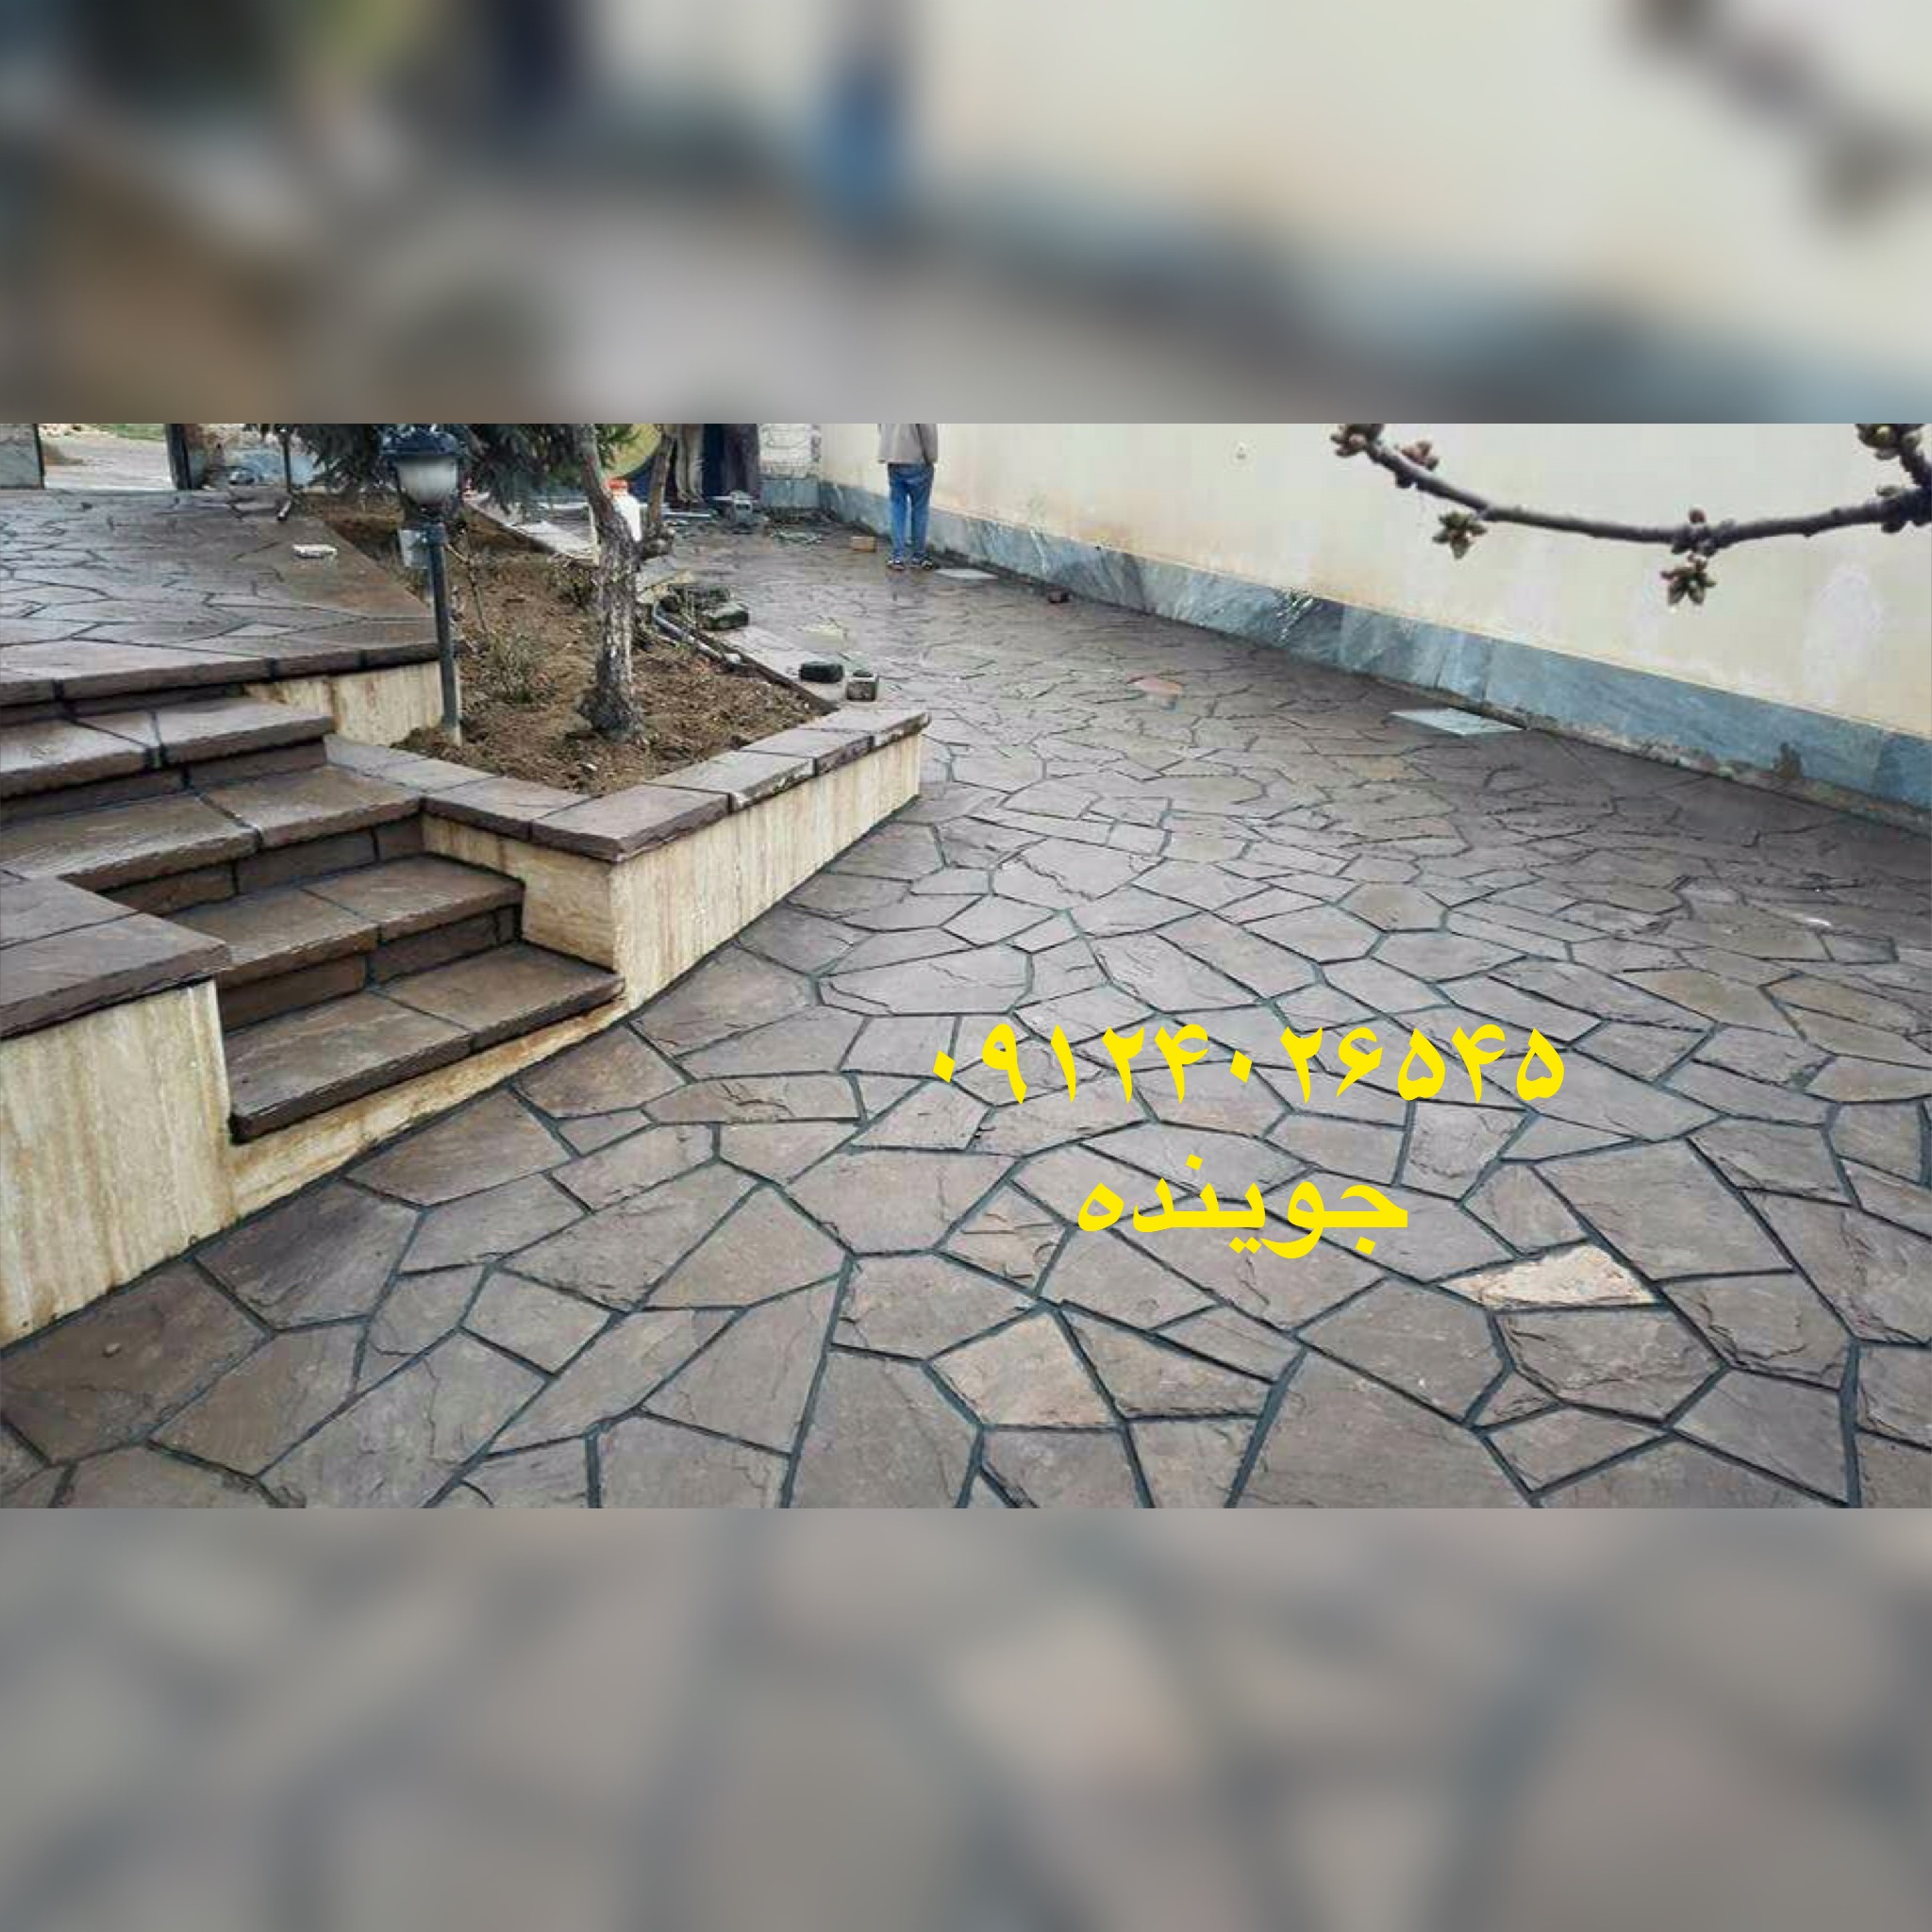 سنگفرش حیاط با نصب سنگ لاشه و سنگ مالون با سنگ قهوای دماوند نصب شده است نصب سنگ لاشه برای کف سازی حیاط 